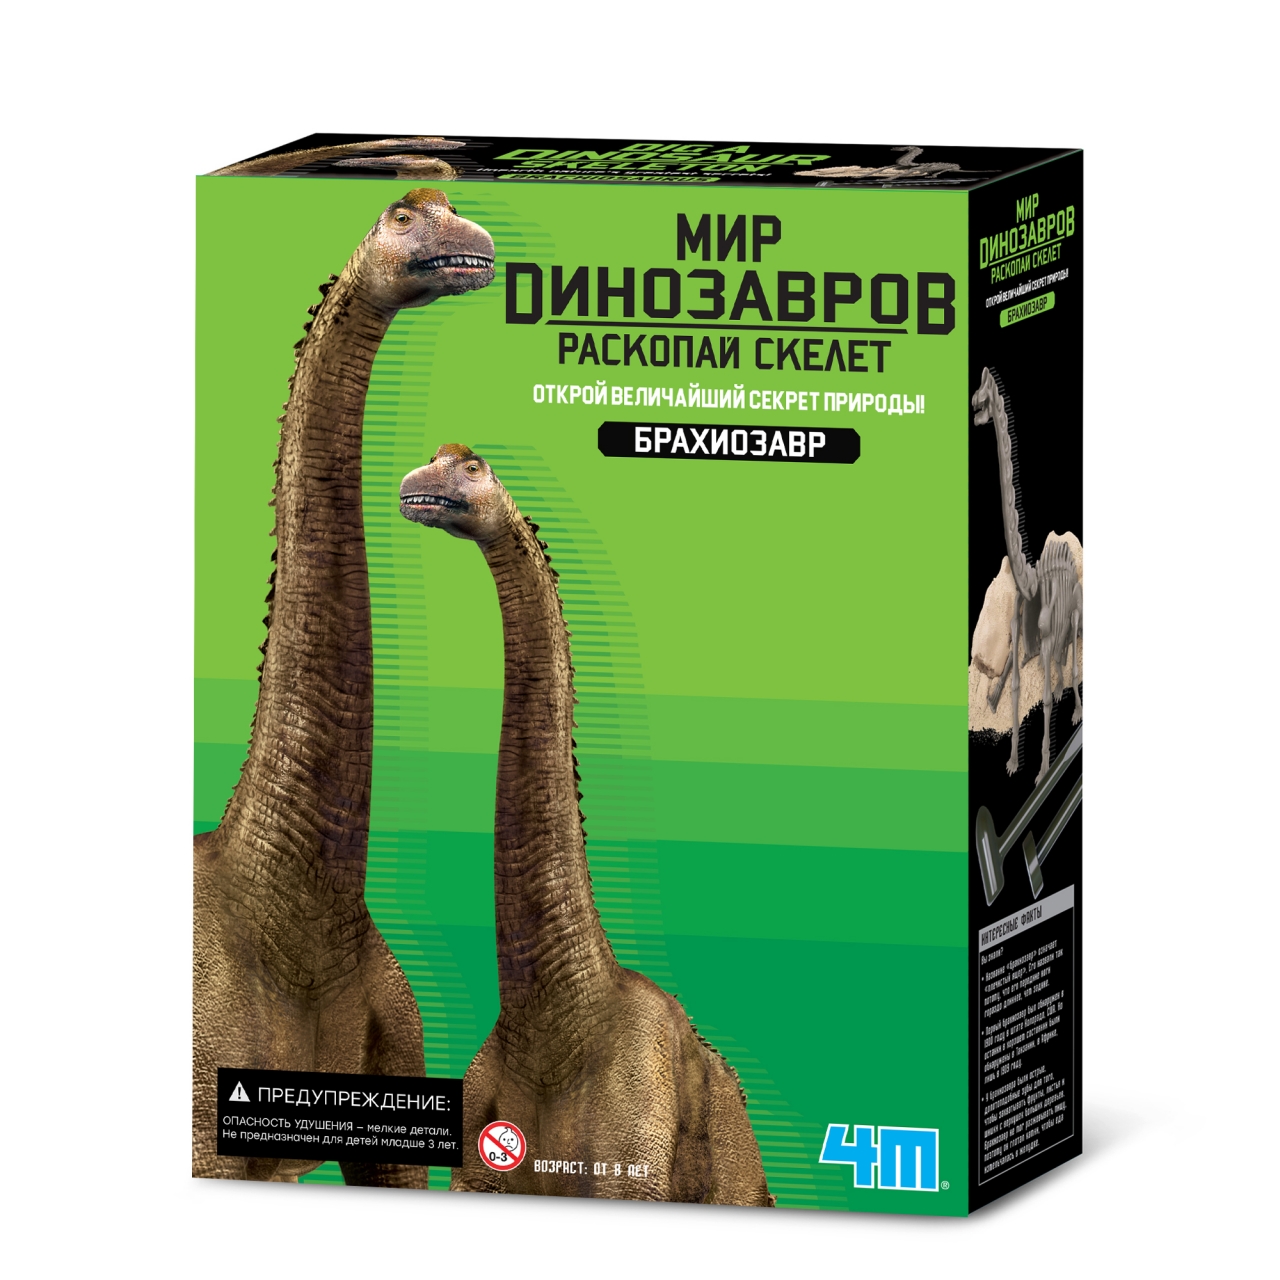 Набор для опытов 4М Игра раскопки для детей Раскопай скелет динозавра Фигурка Брахиозавра